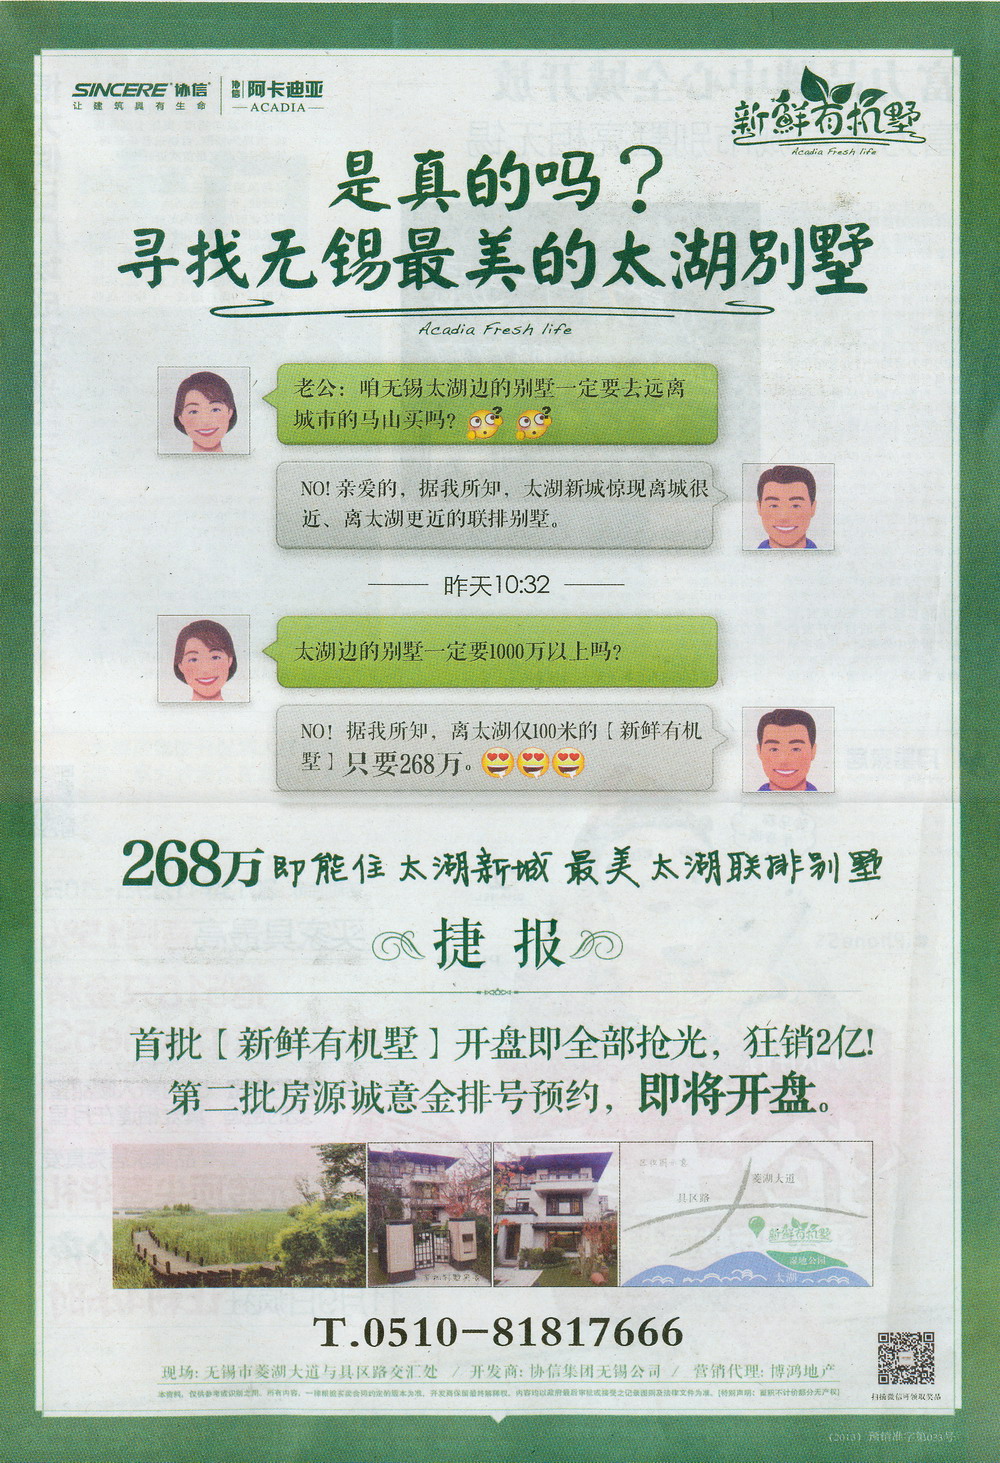 报纸广告 2013-10-31 江南晚报 B17   